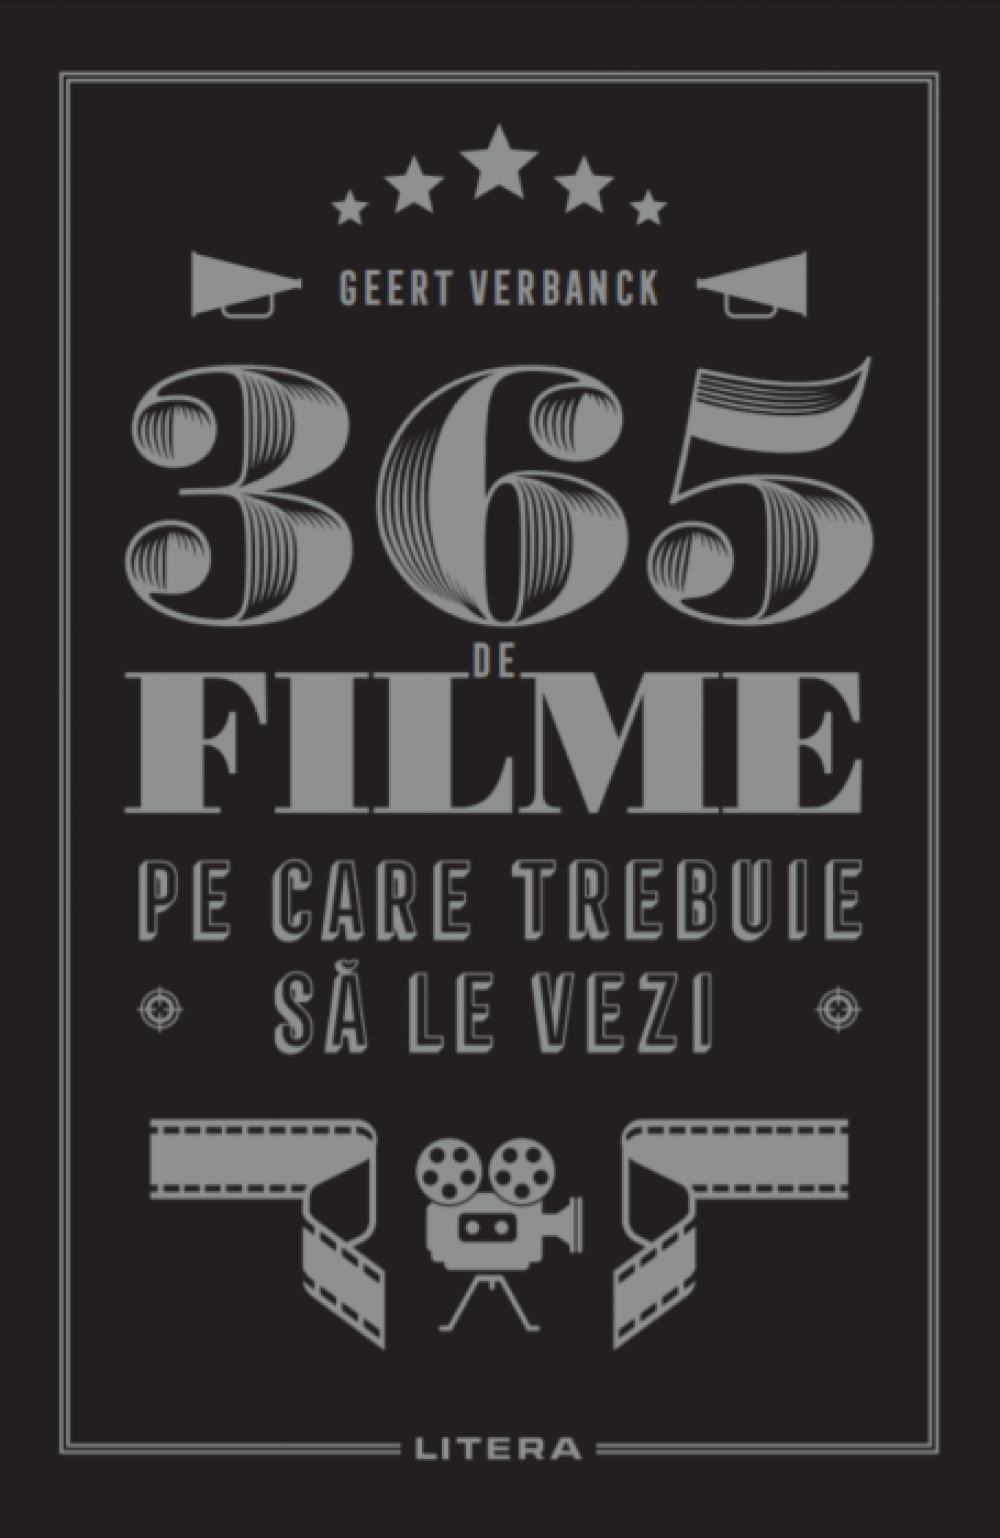 365 de filme pe care trebuie sa le vezi, Geert Verbanck